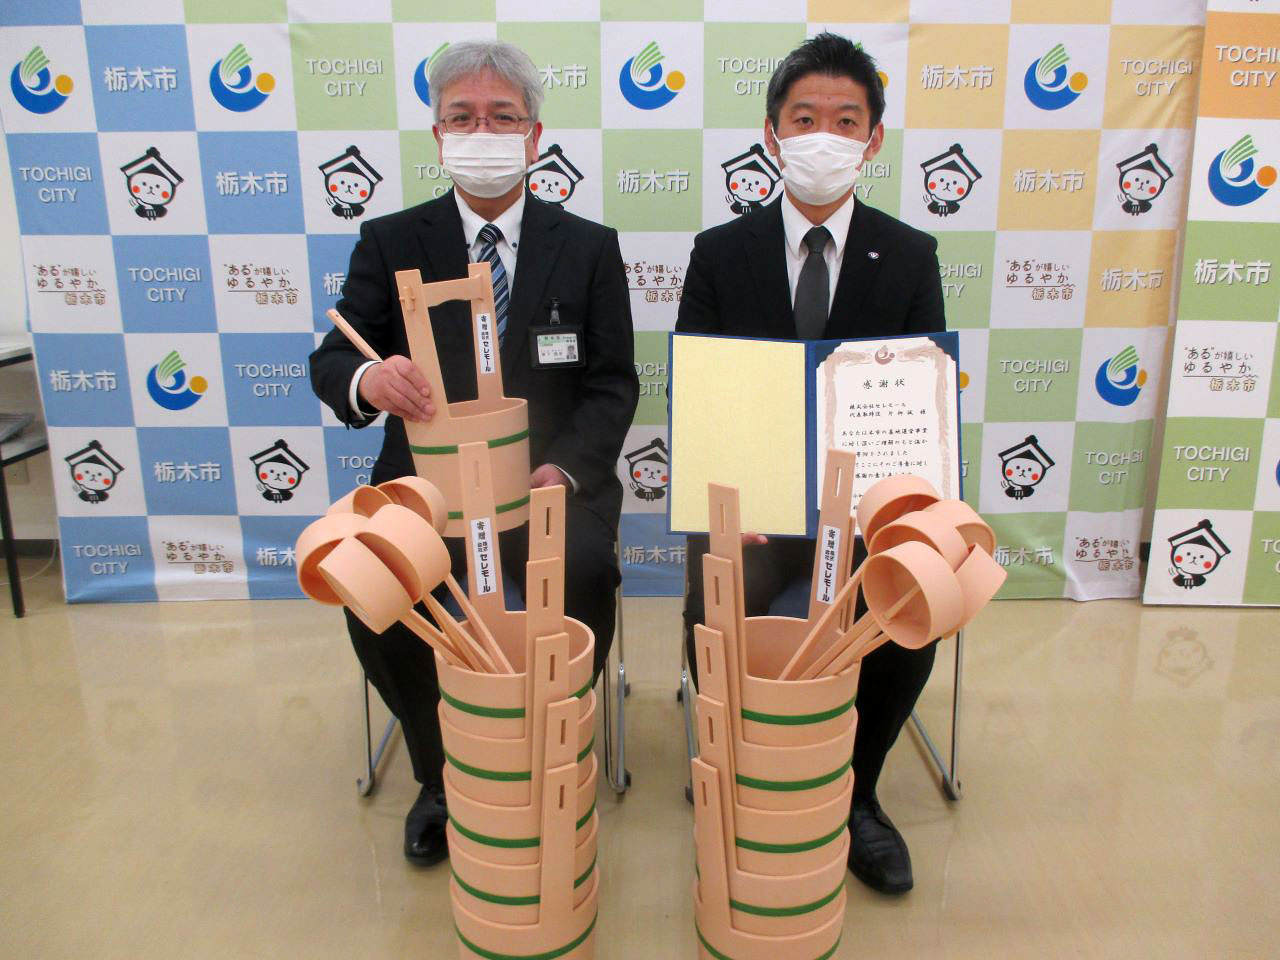 栃木市 環境課に公営墓地用として手桶と柄杓を寄付致しました